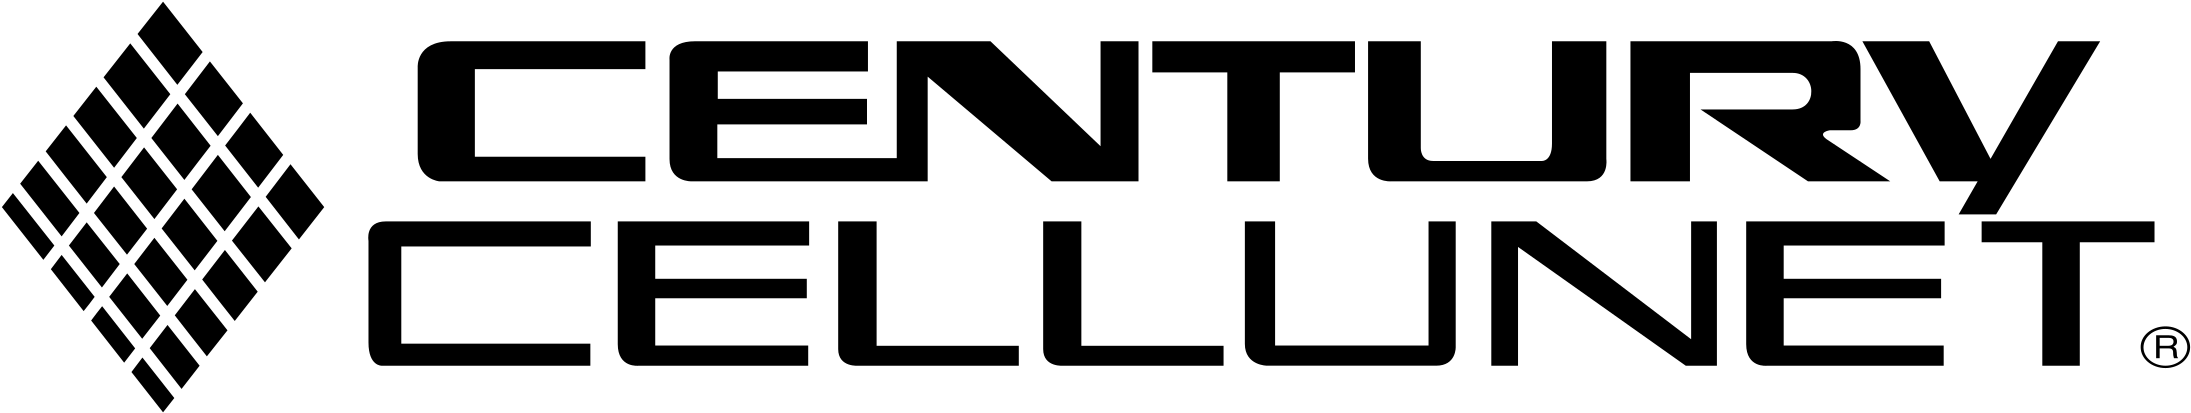 Century Cellunet Logo Png Transparent - Graphics Clipart (2400x2400), Png Download